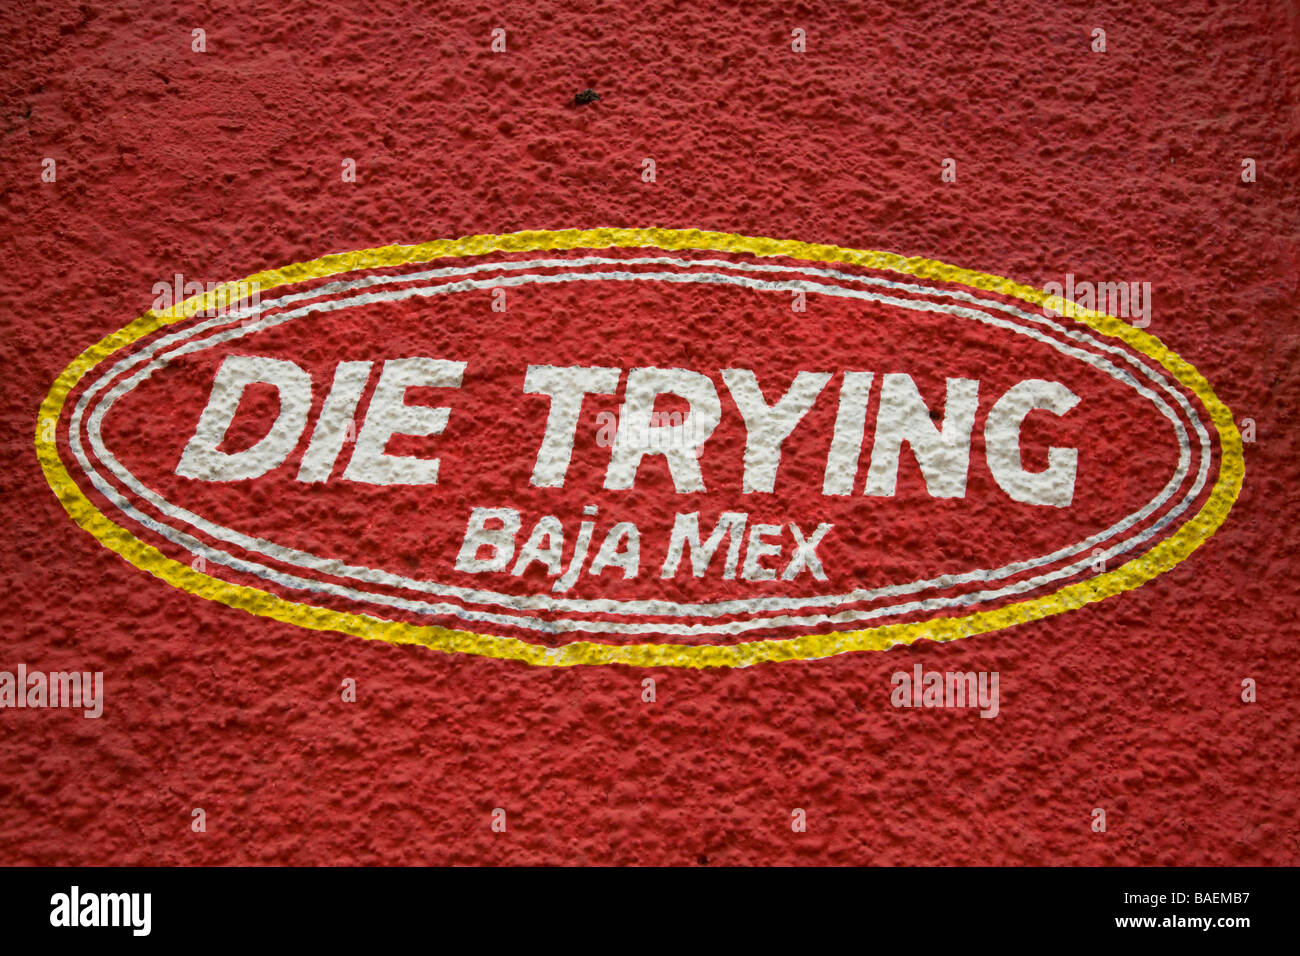 Messico San Jose del Cabo muoiono cercando Baja Mex dipinta sulla parete rossa logo e nome del negozio Apple Store Foto Stock